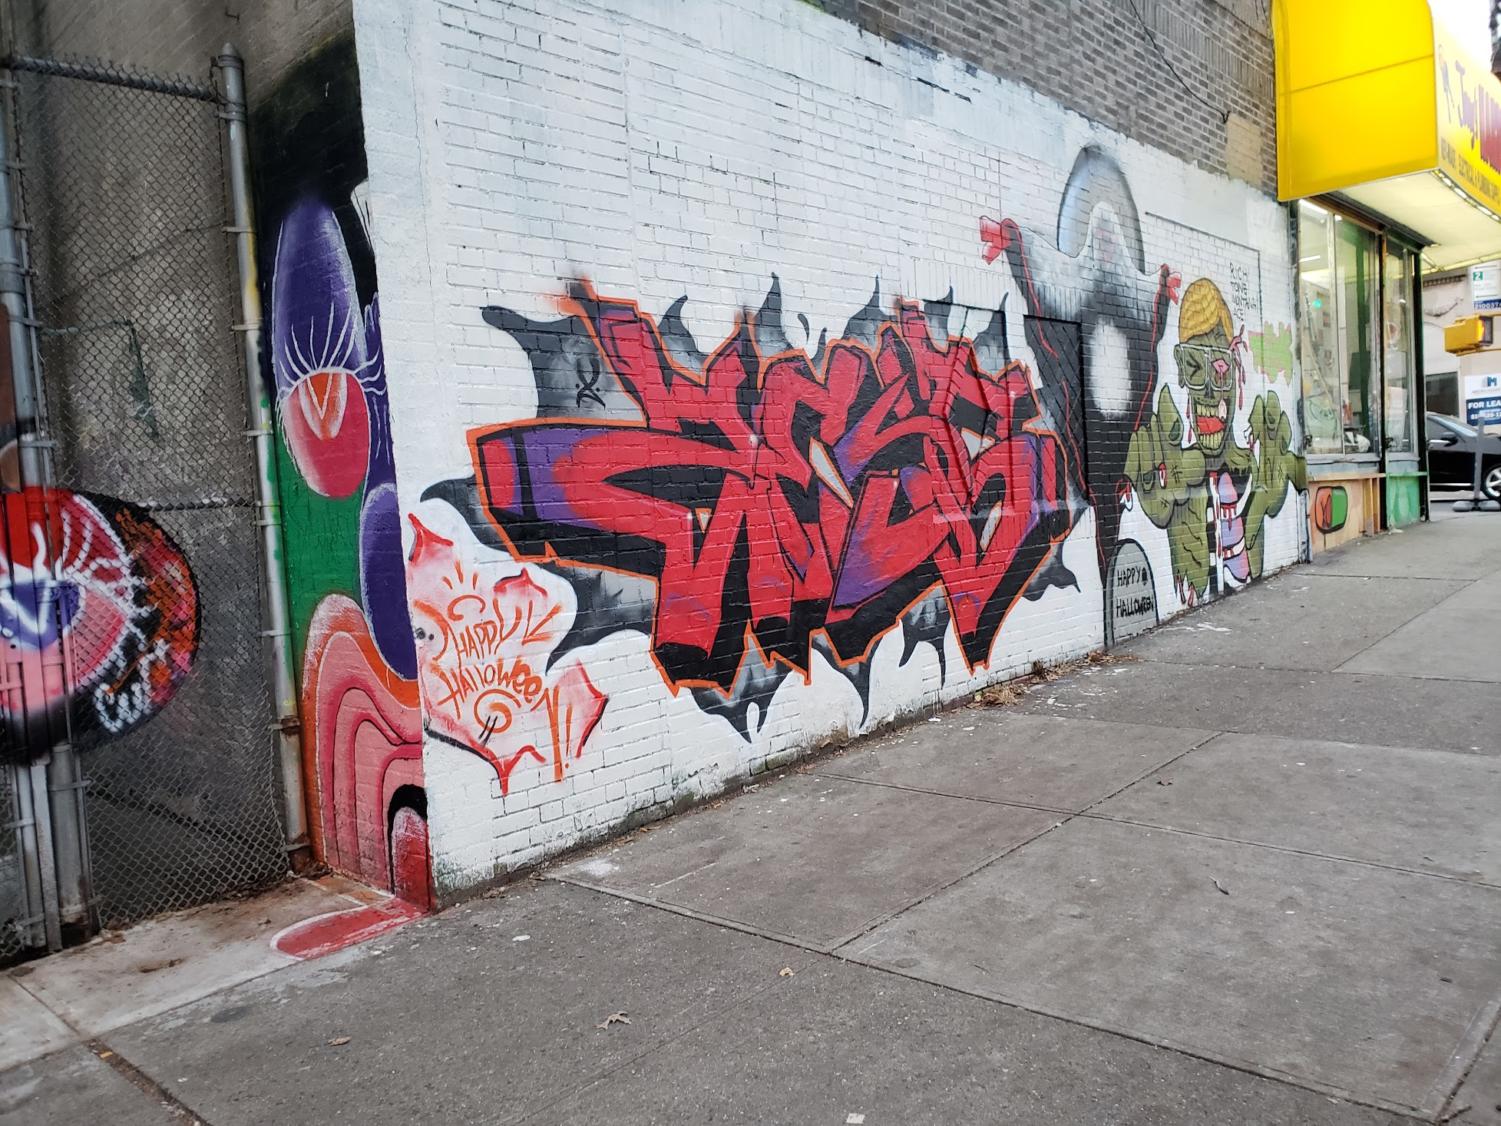 Graffiti New York